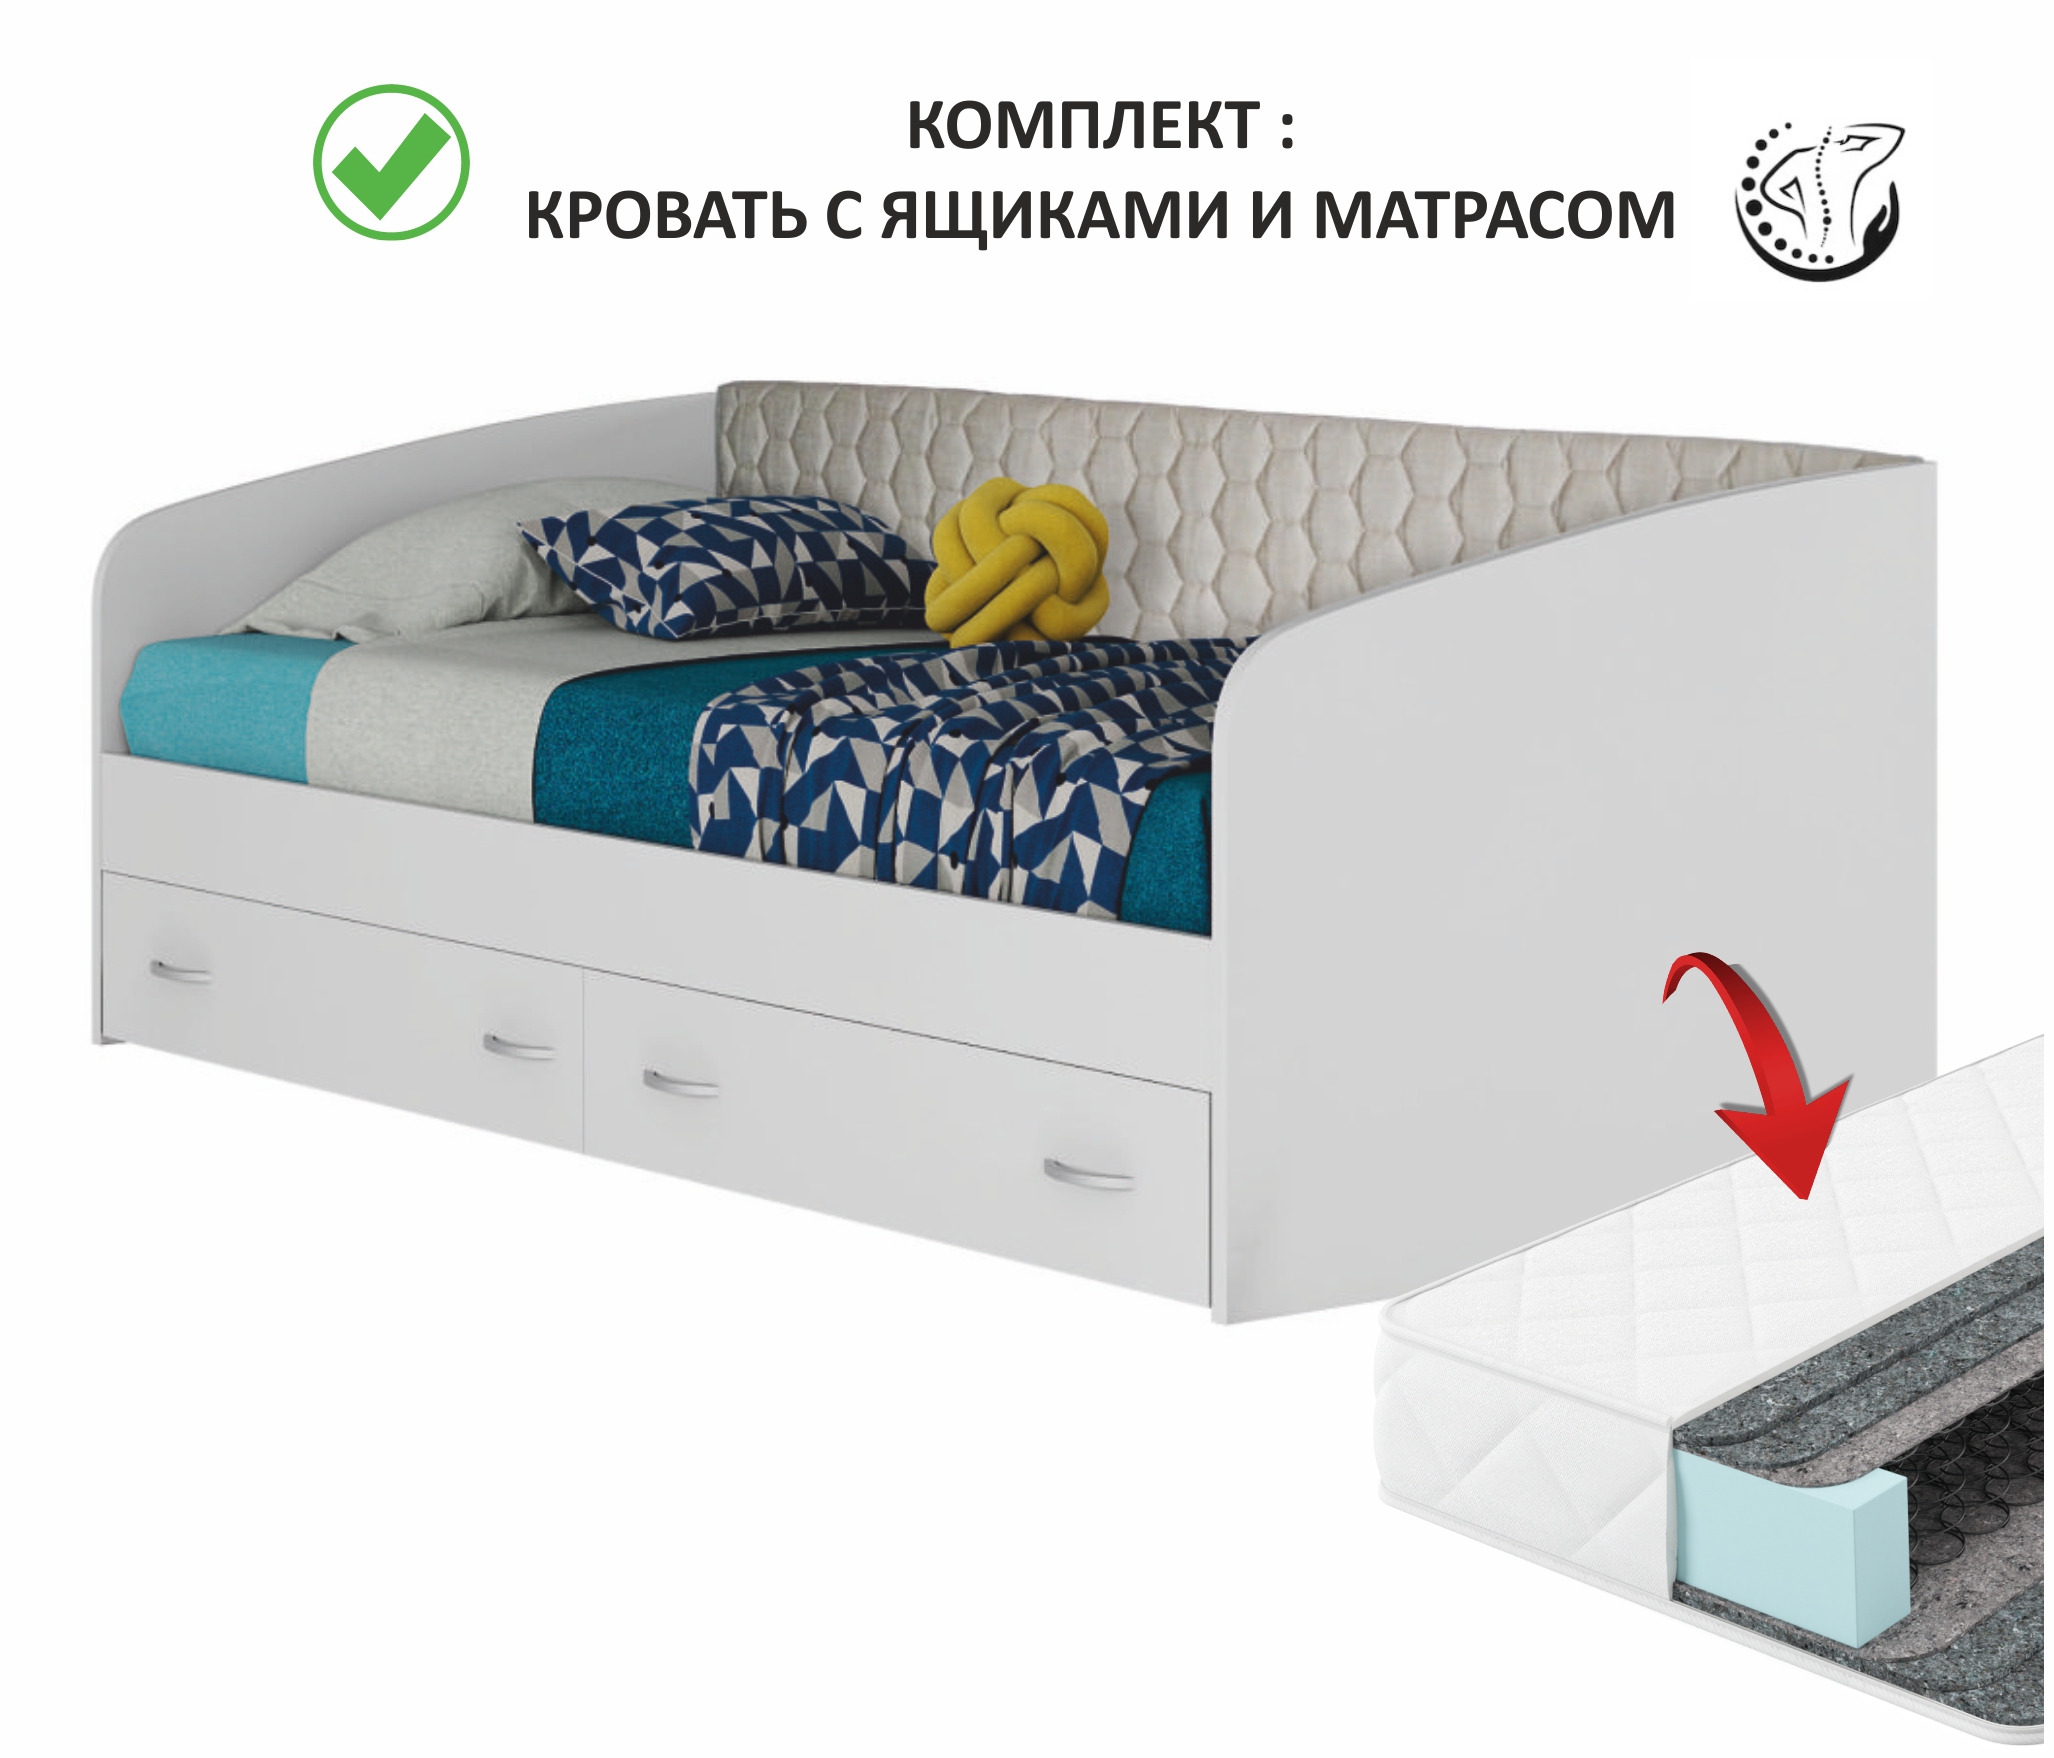 Купить кровать уника-п 90.2 с матрасом гост (белый) | МебельСТОК